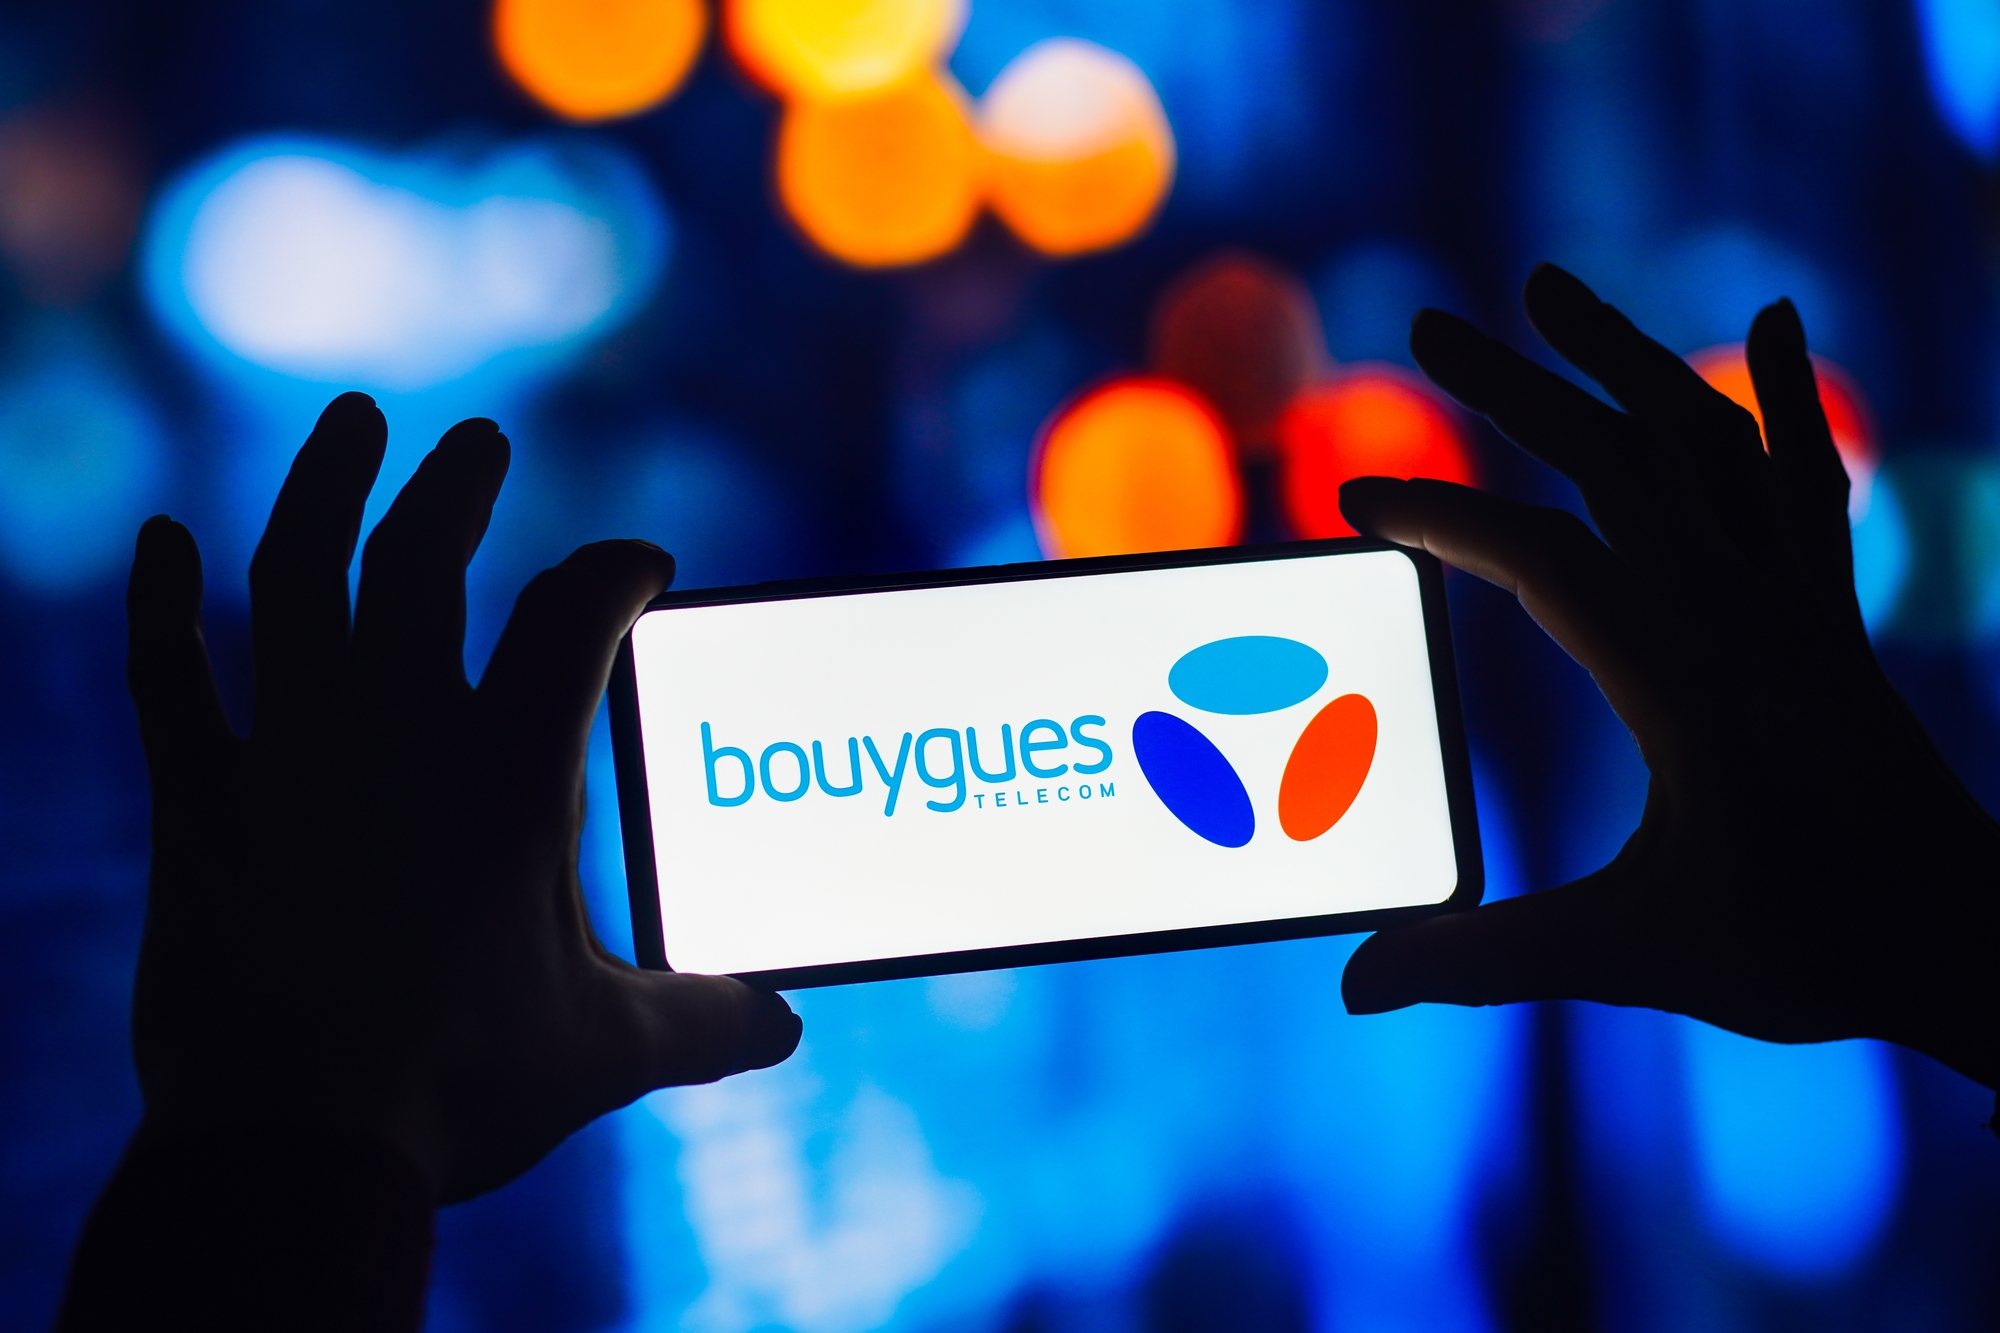 La filiale cloud de Bouygues Telecom touchée par un ransomware : que s'est-il passé ?